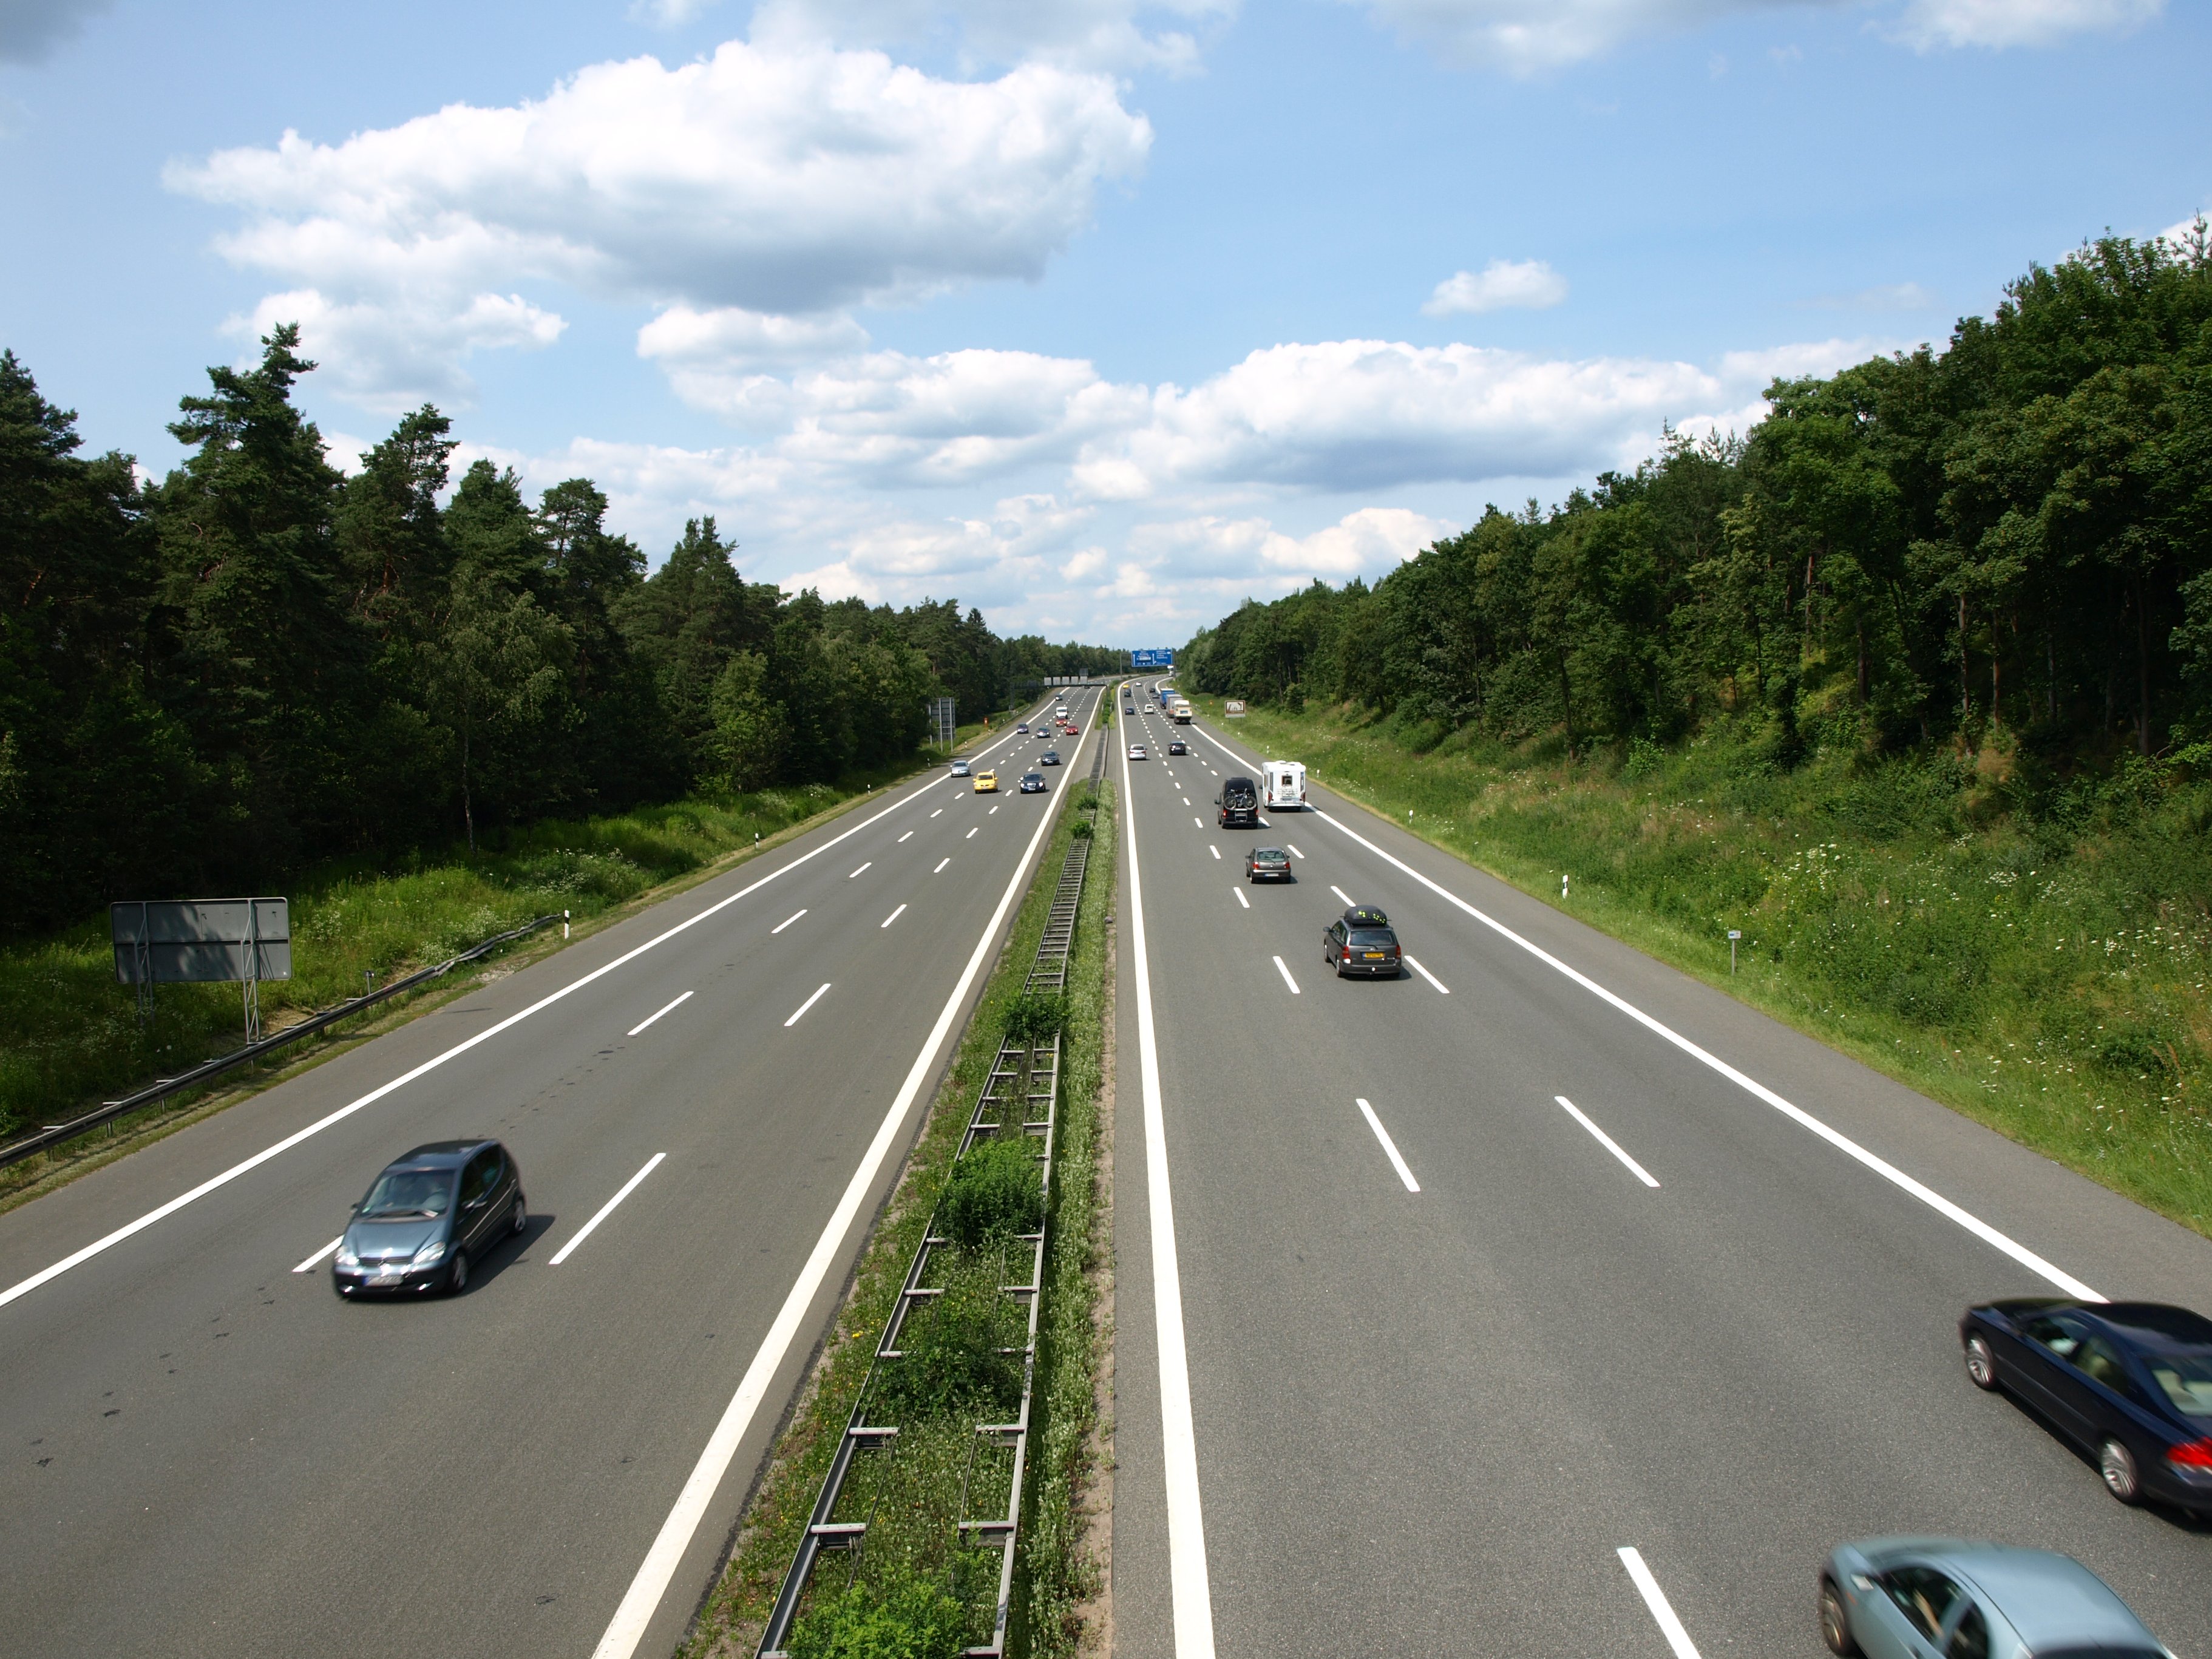 Autobahn A9